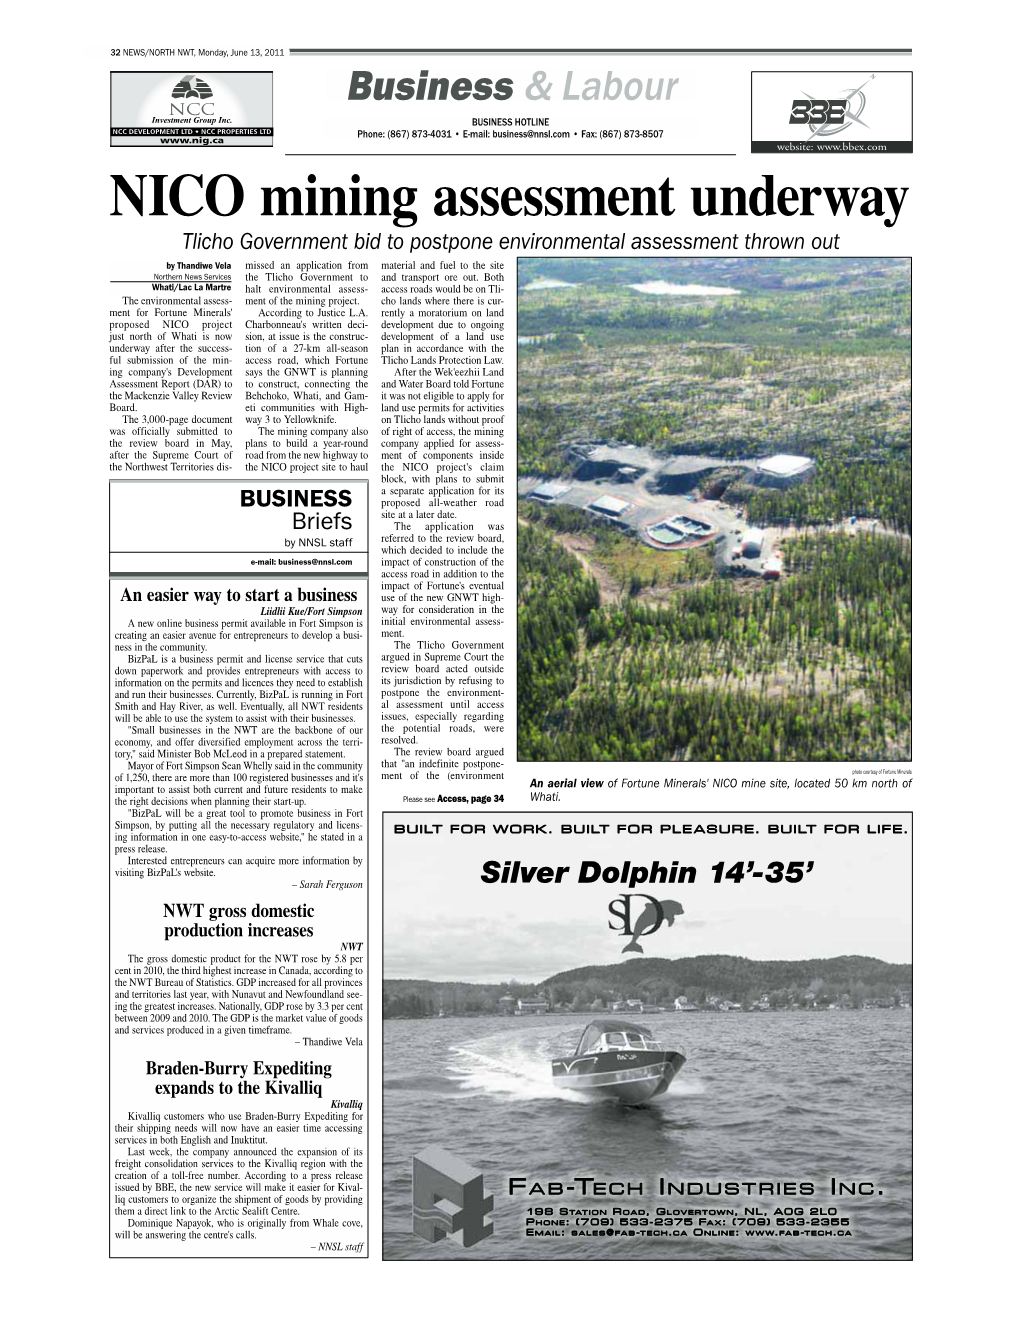 NICO Mining Assessment Underway